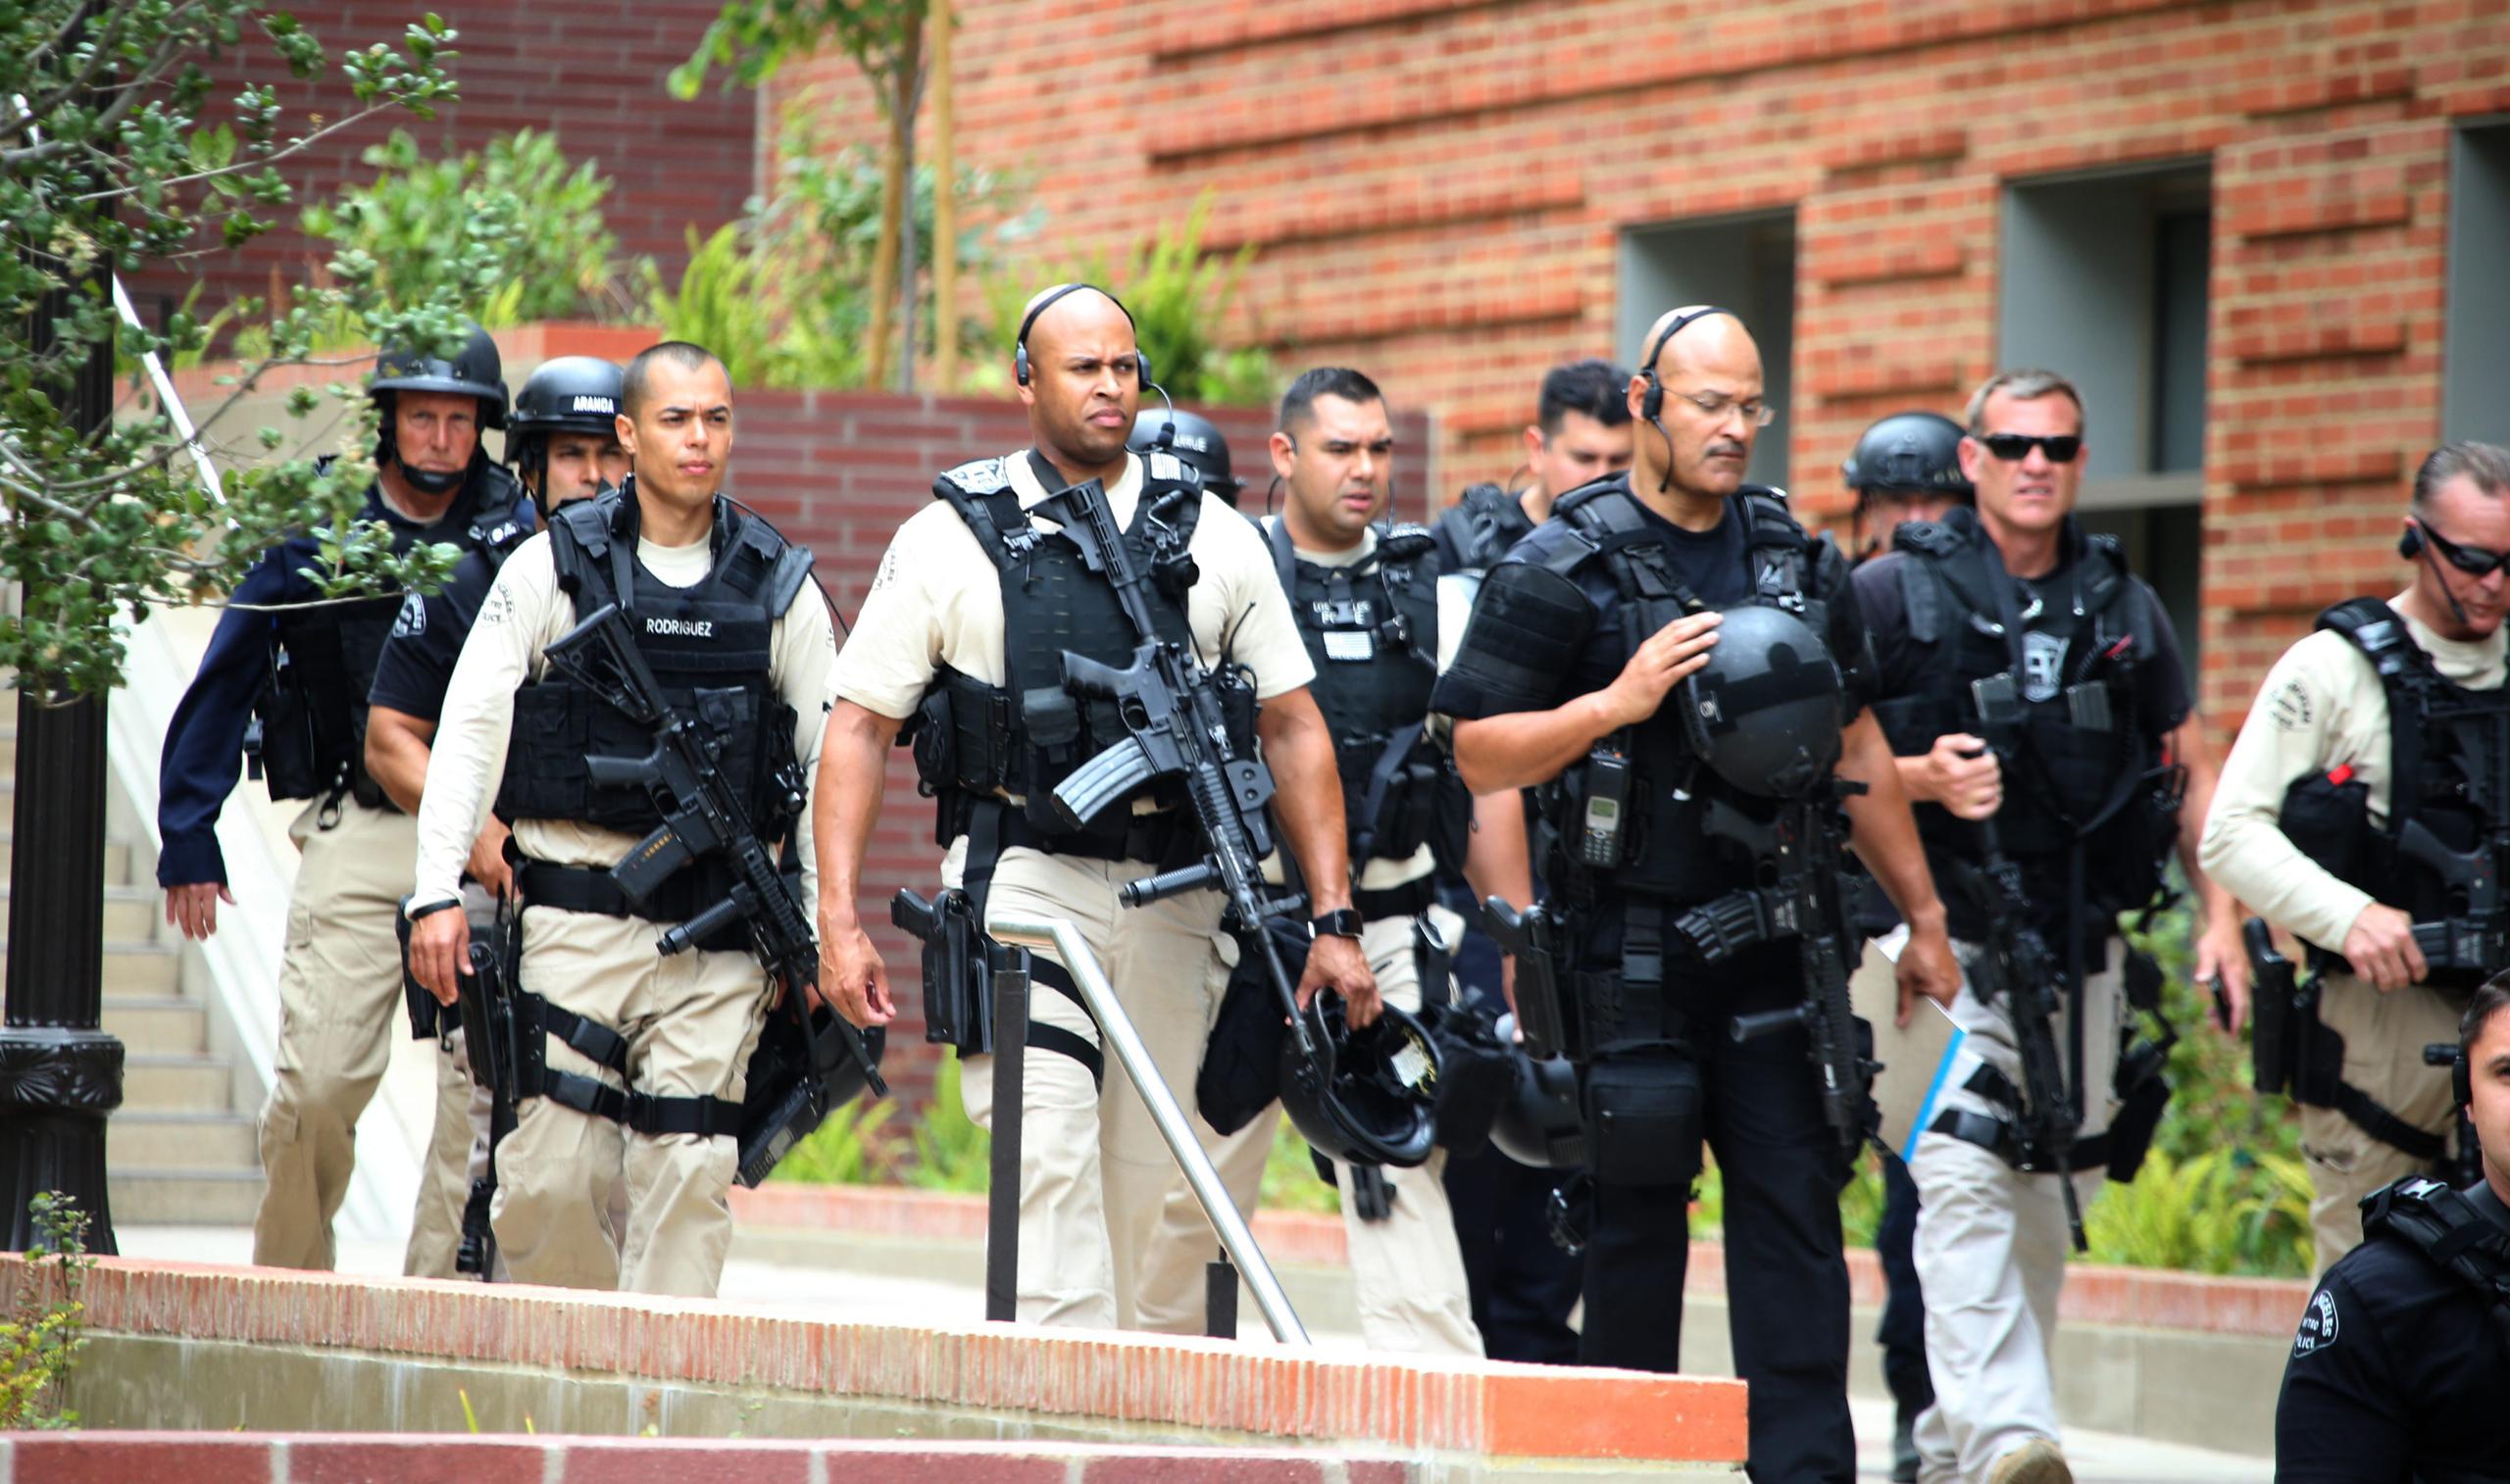 La policía resguarda la seguridad en el campus tras tiroteo.